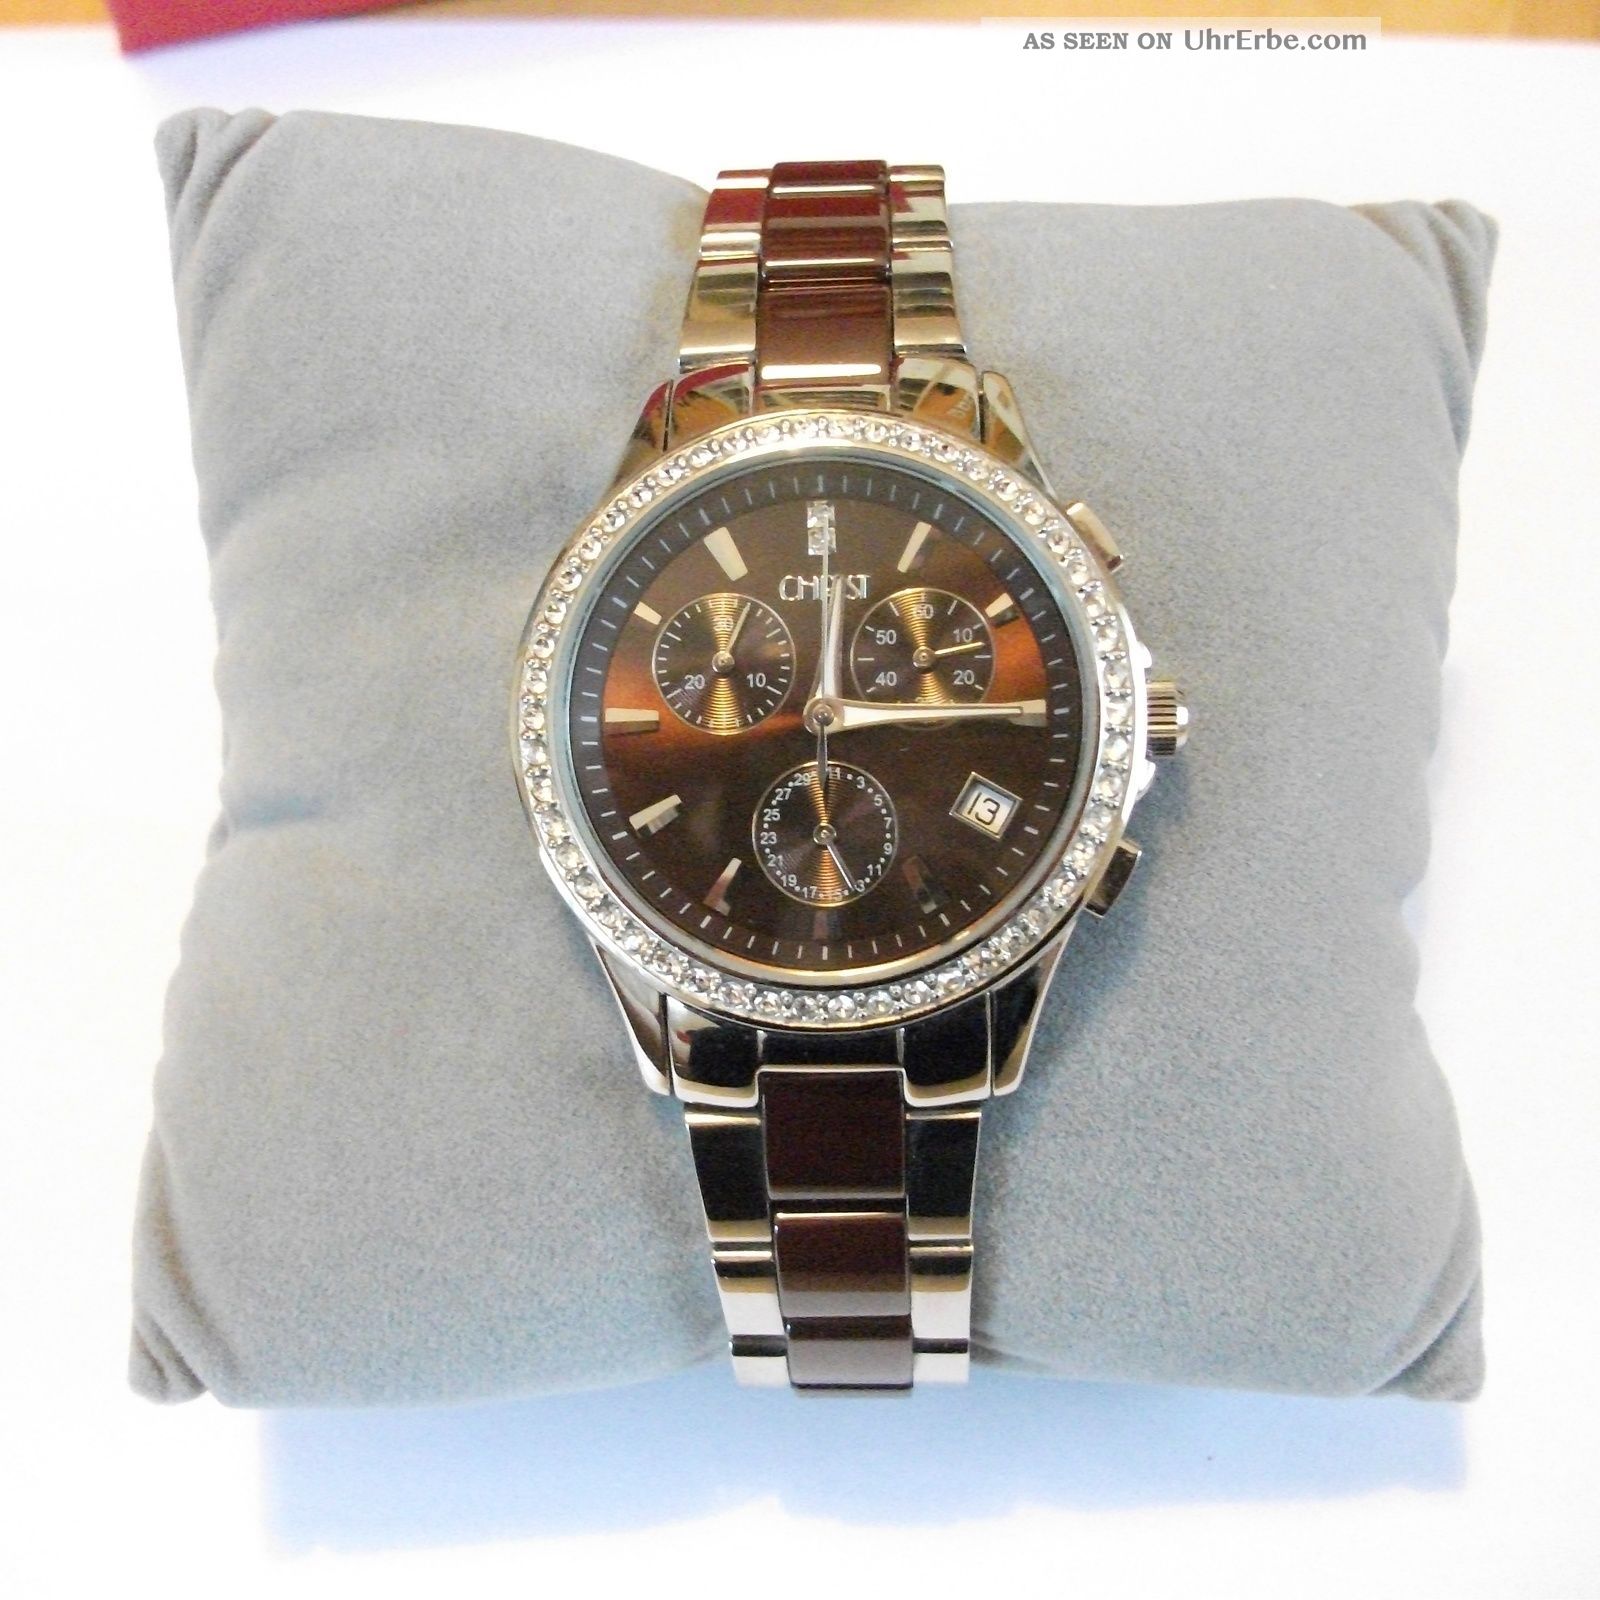 Christ Damenuhr Uhr Chronograph Trend Silber/braun Mod.  85461702,  2 J. Armbanduhren Bild